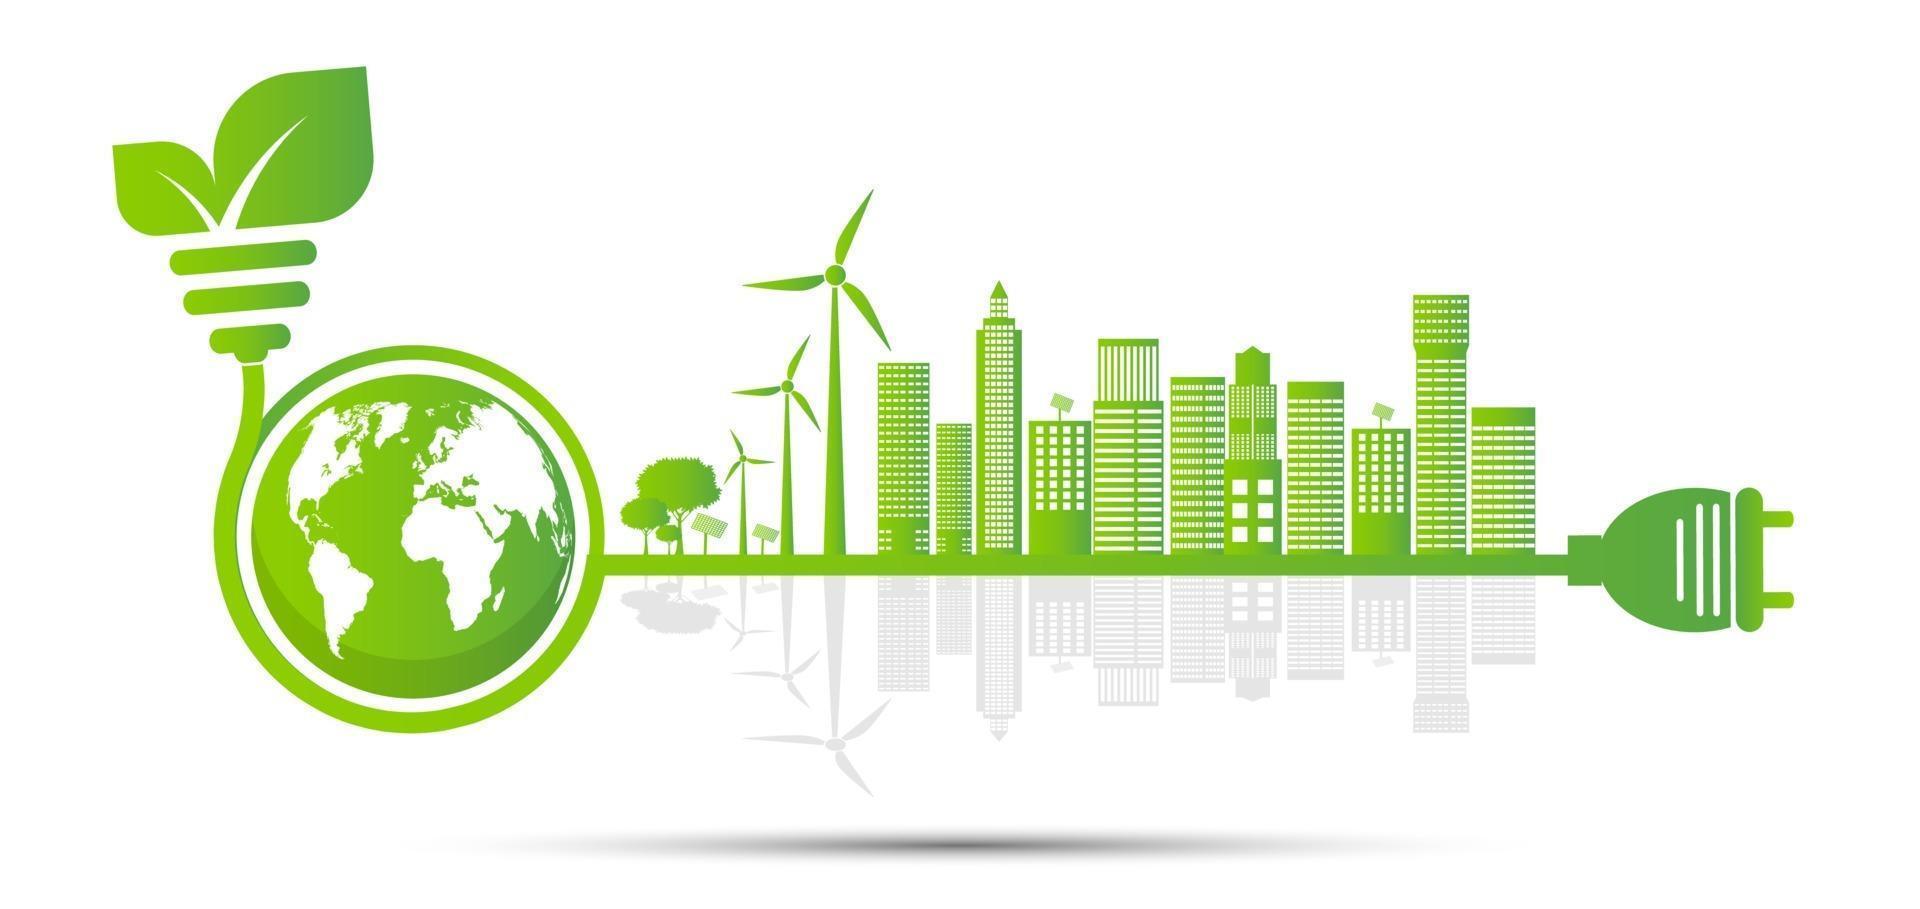 ekologi och miljökoncept jord symbol med gröna blad runt städer hjälper världen med miljövänliga idéer vektor